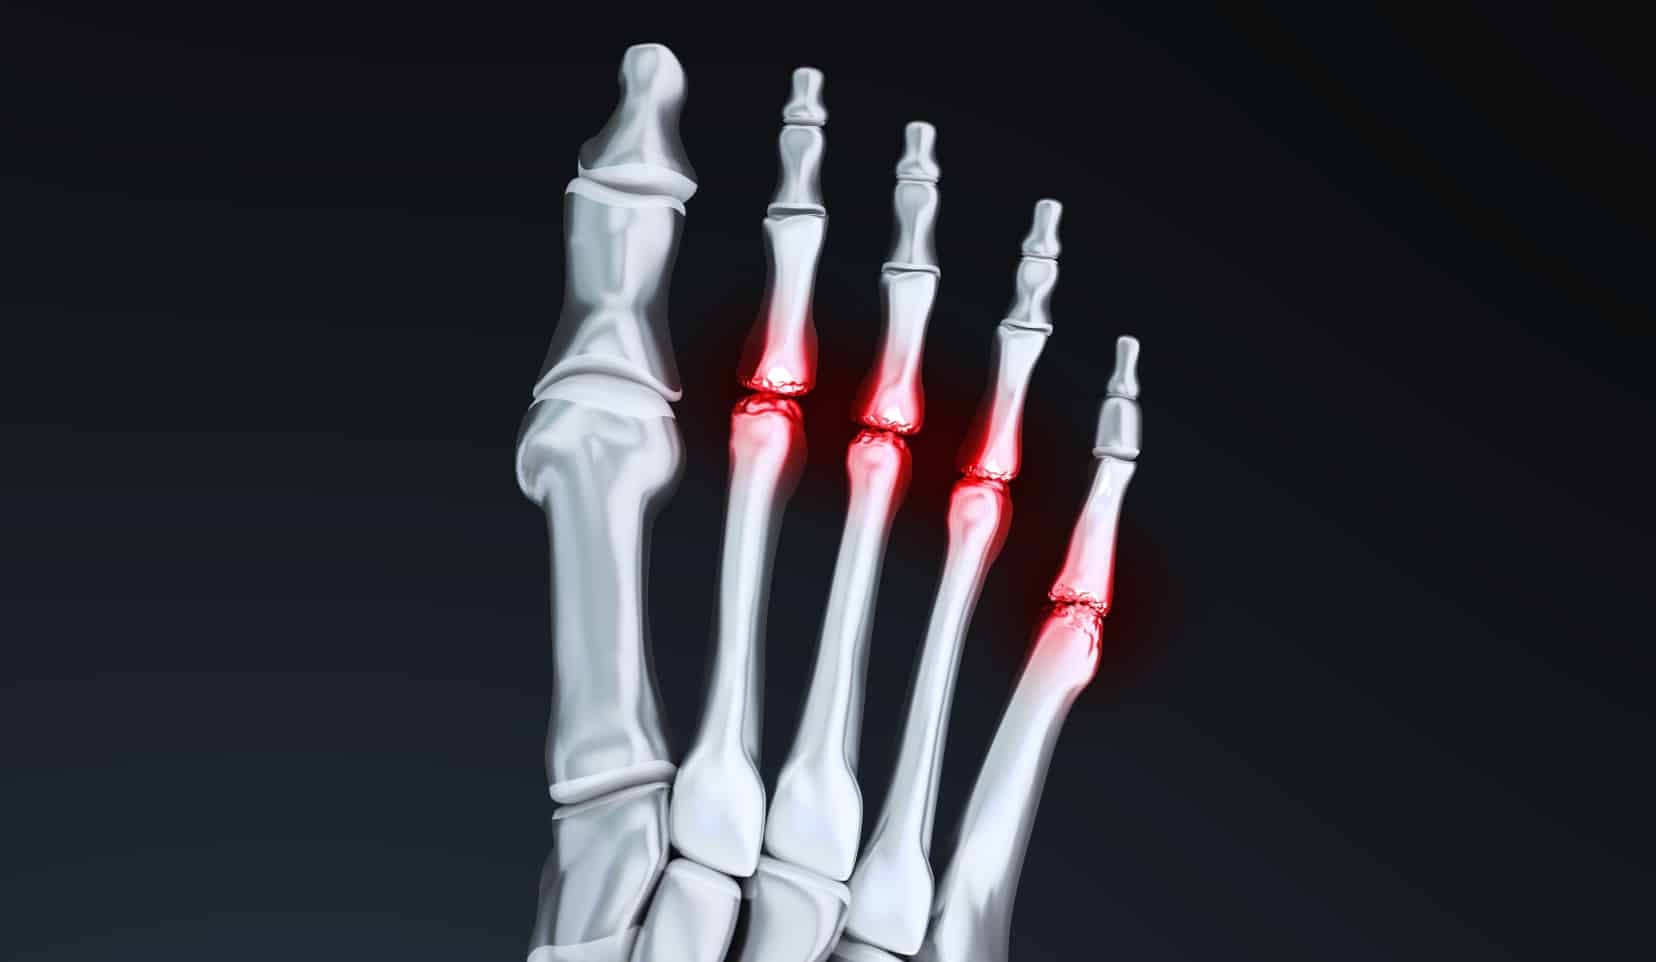 Ostéotomie des métatarsiens latéraux | Chirurgien orthopédique | Bois-Guillaume | Dr Polle